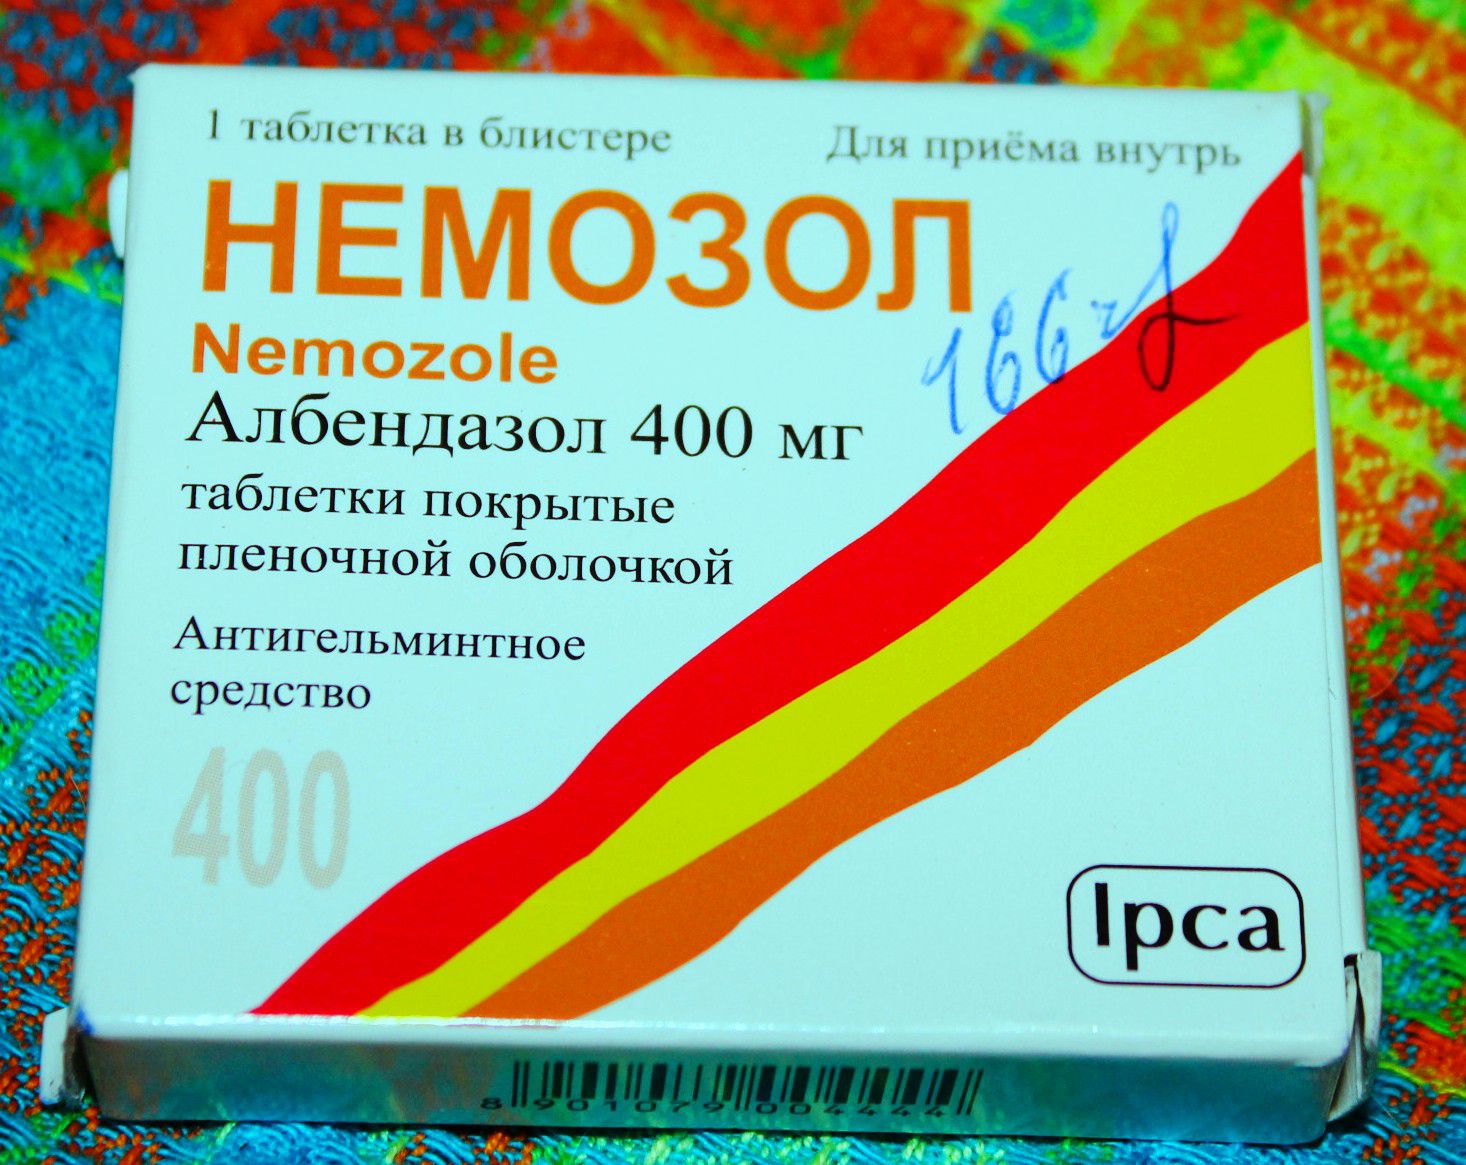 Альбендазол отзывы людей. Немозол альбендазол 400мг. Немозол 1 таблетка. Немозол 400 мг. Таблетка от глистов немозол 400.